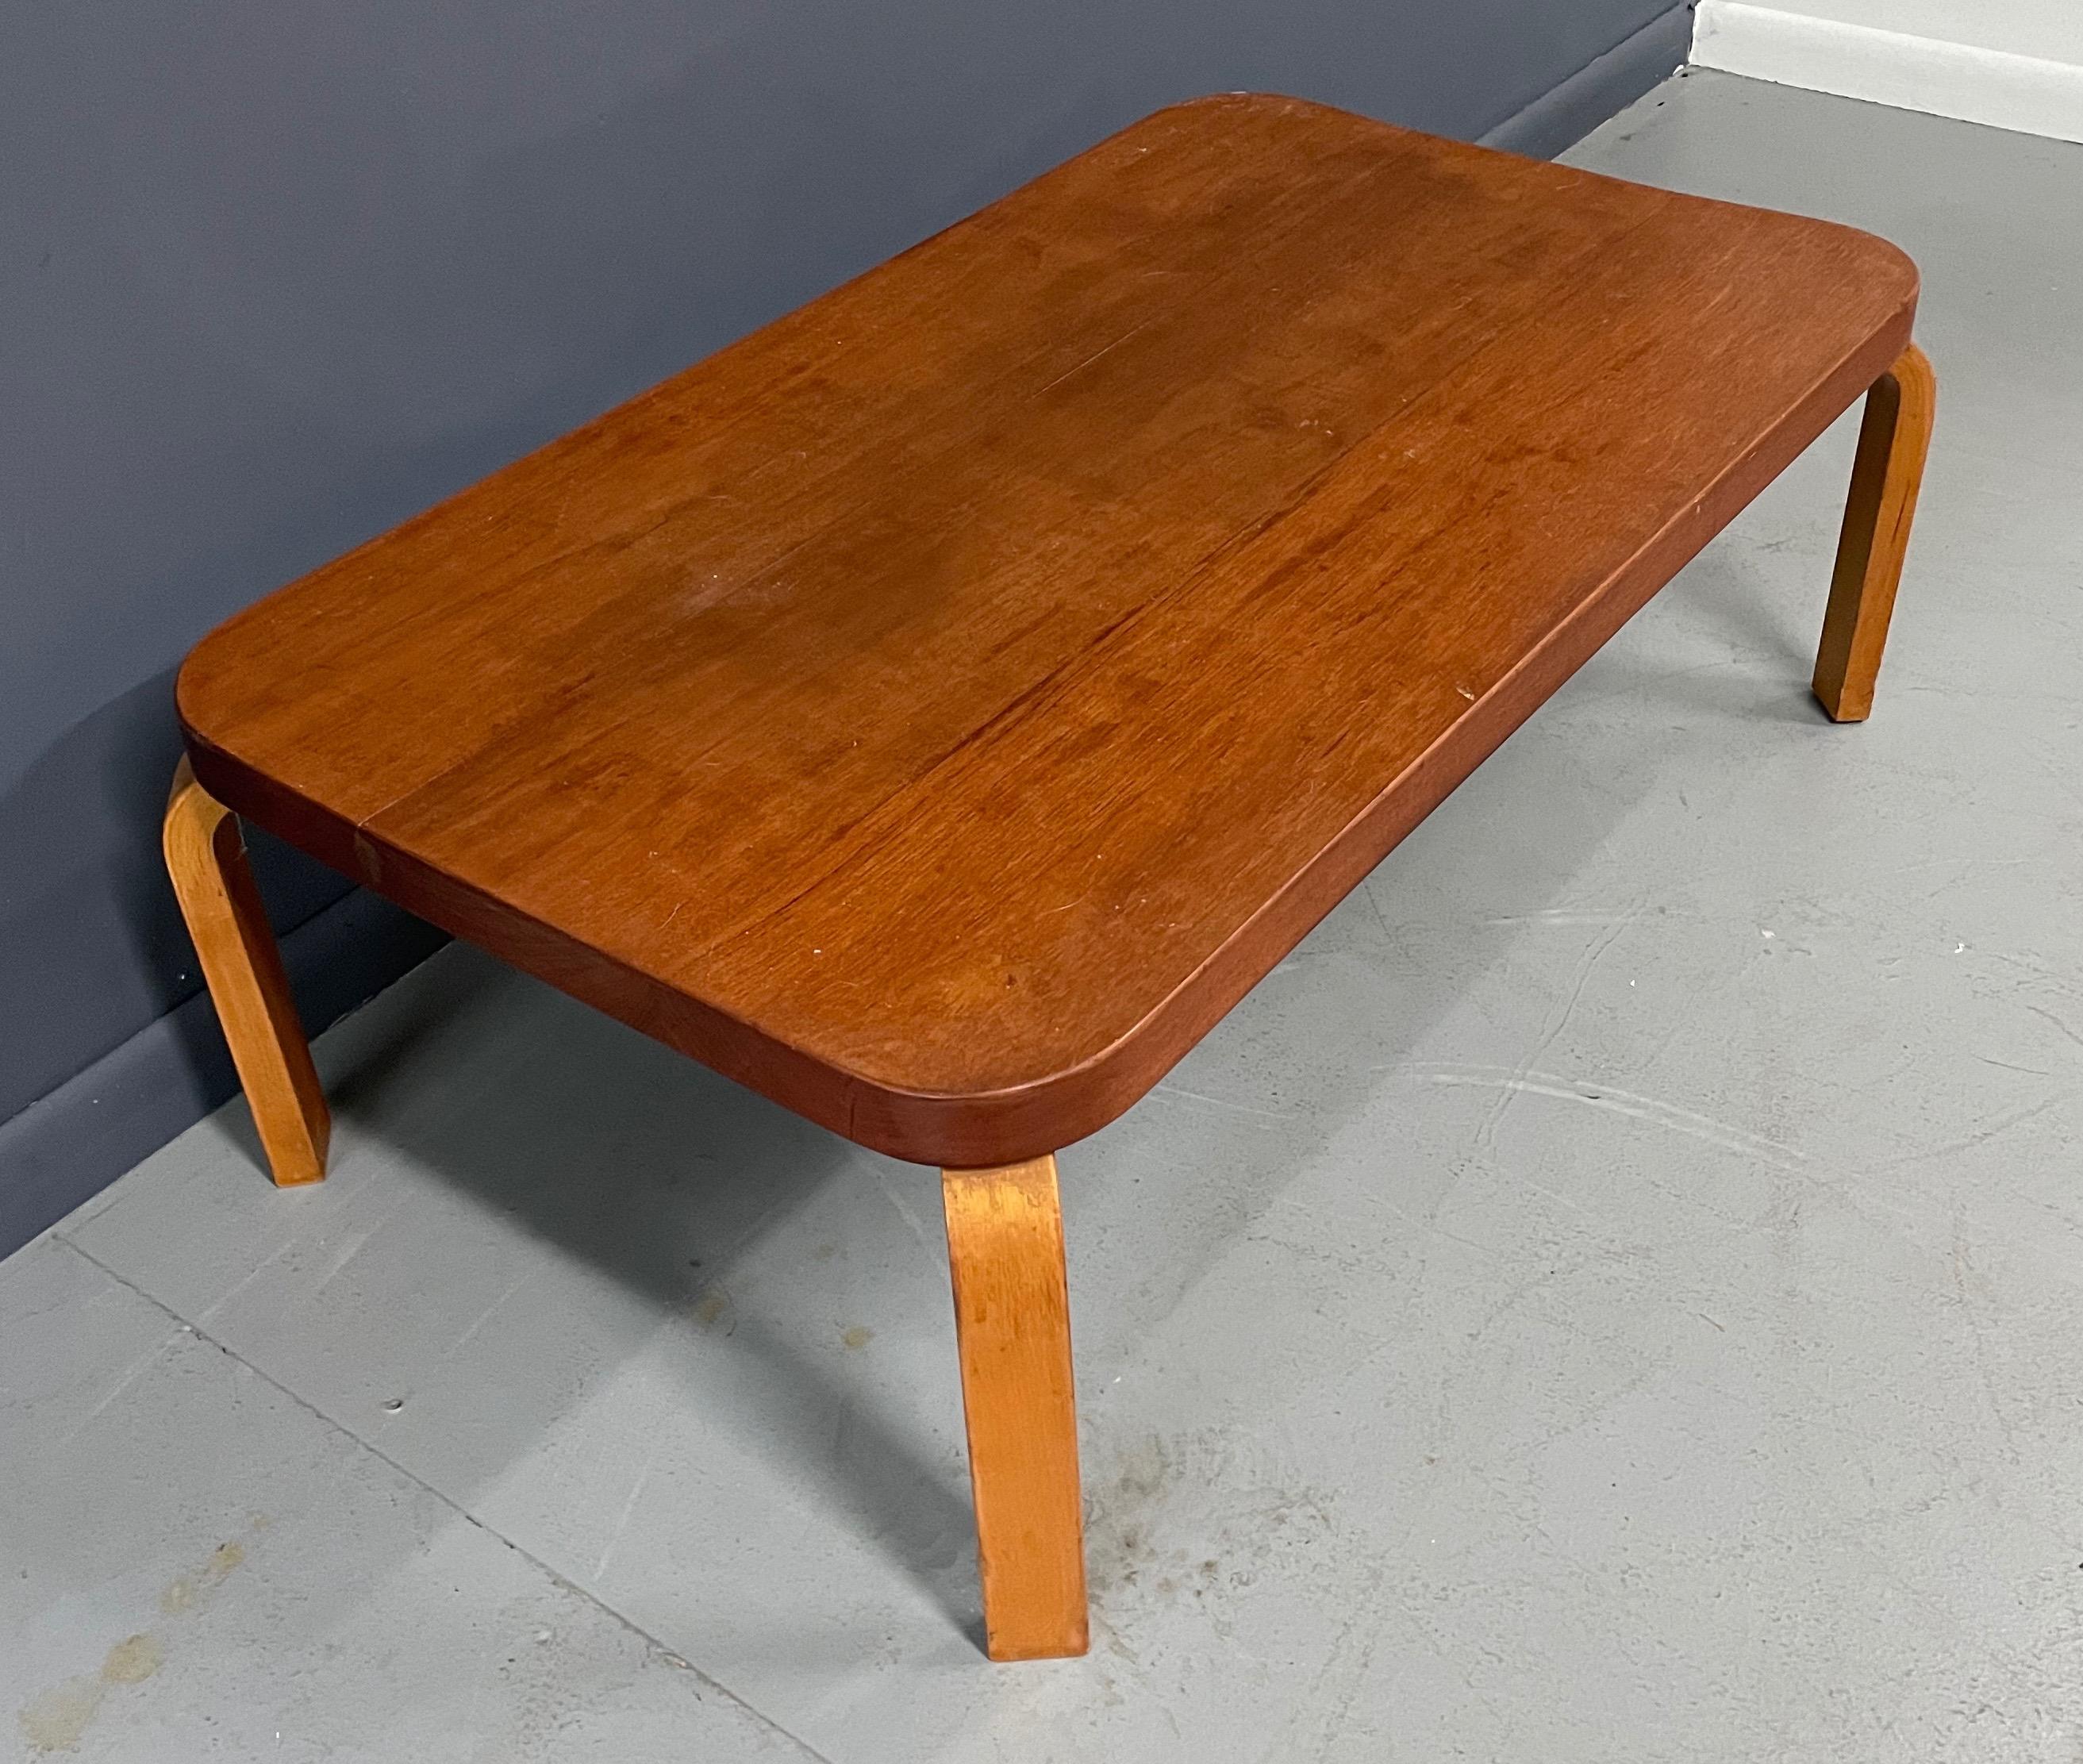 Une pièce importante conçue par Alvar Aalto pour Artek et placée au pavillon finlandais de l'exposition universelle de 1939. La table conserve son autocollant douanier d'origine. Cette table est un survivant et se trouve dans son état d'origine.